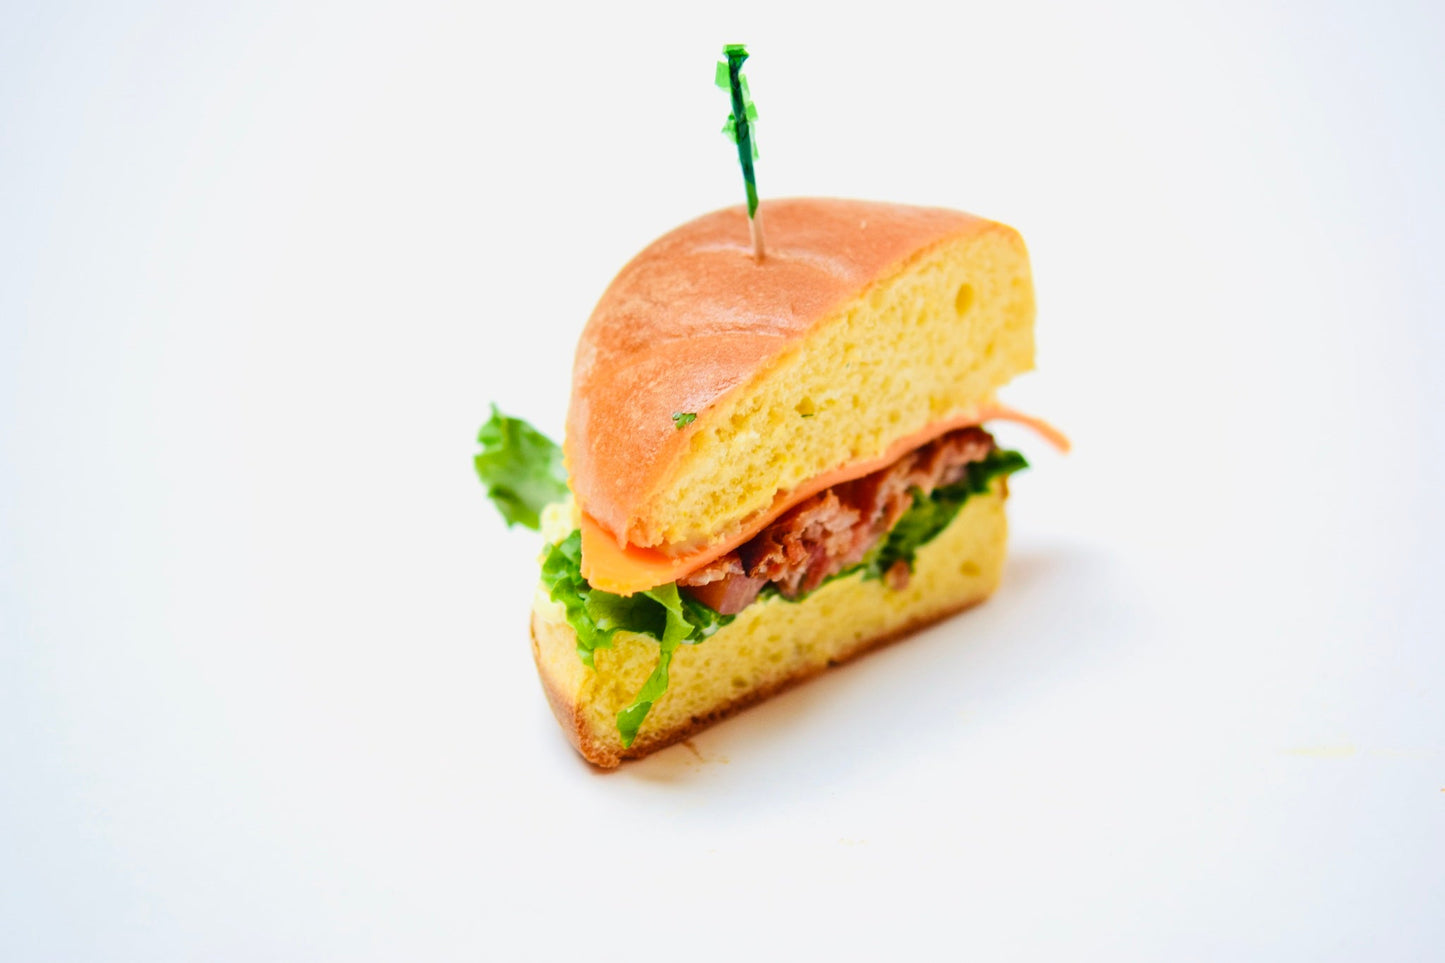 Cheesy Bacon Sandwich - Full Order